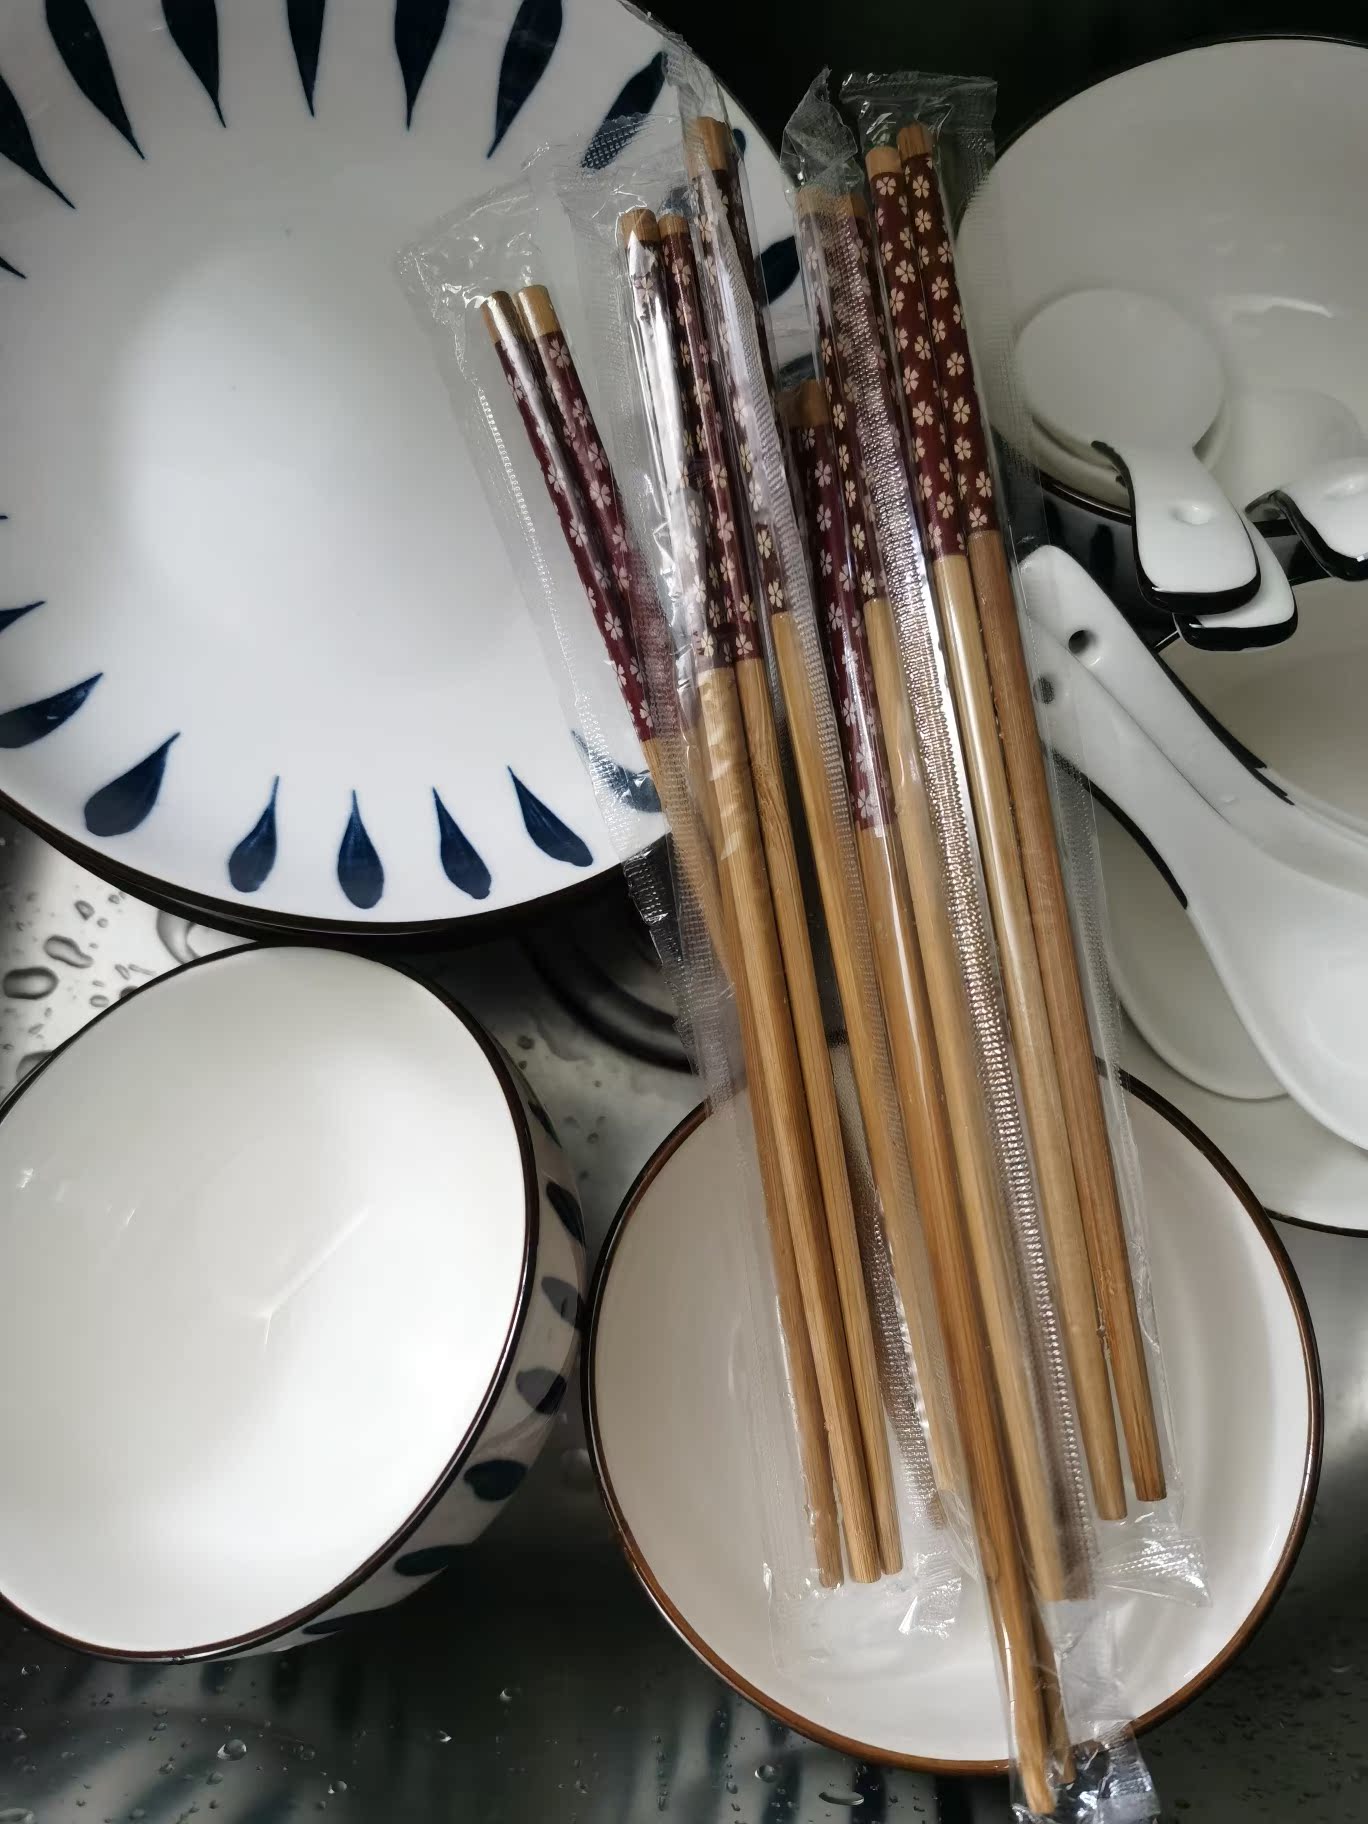 16件套陶瓷餐具碗碟盘子